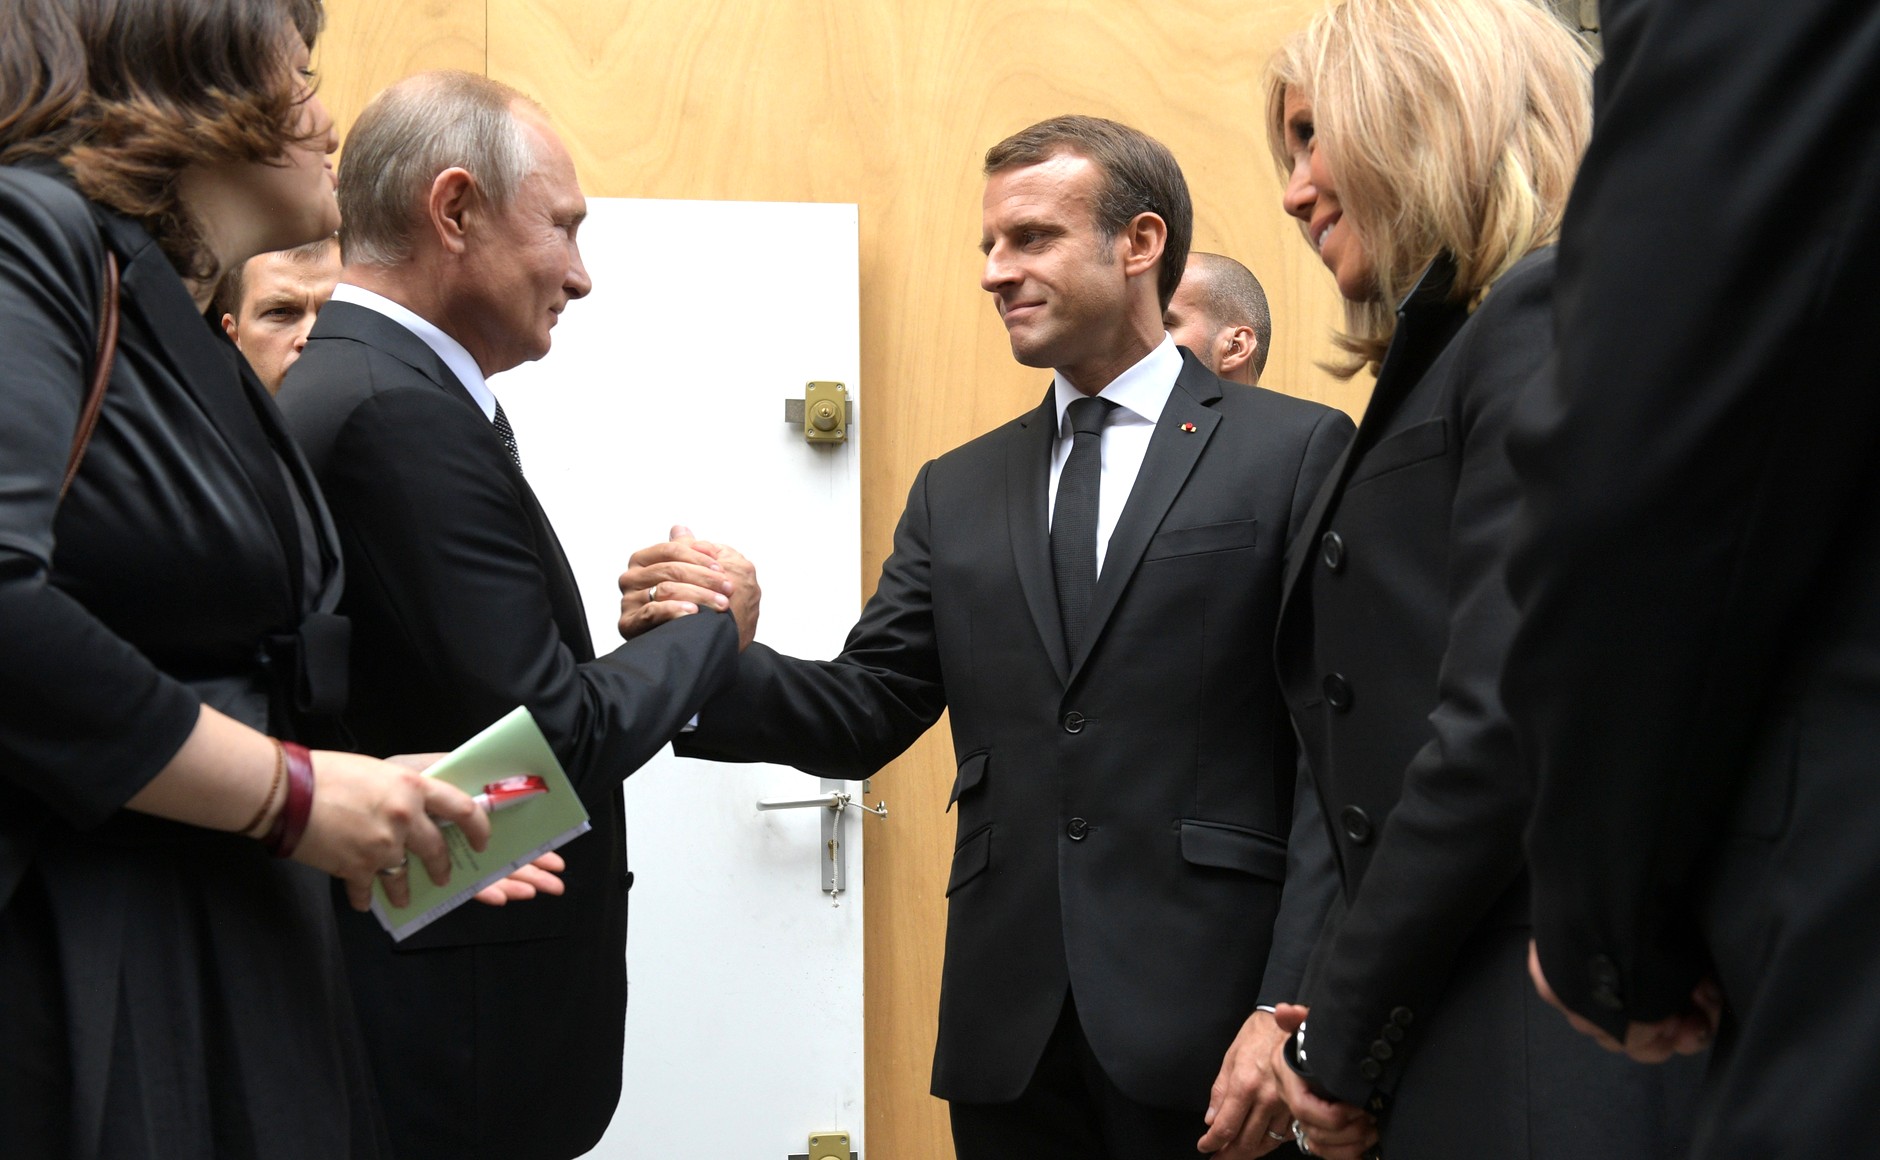 Франция тайно записала переговоры Макрона и Путина